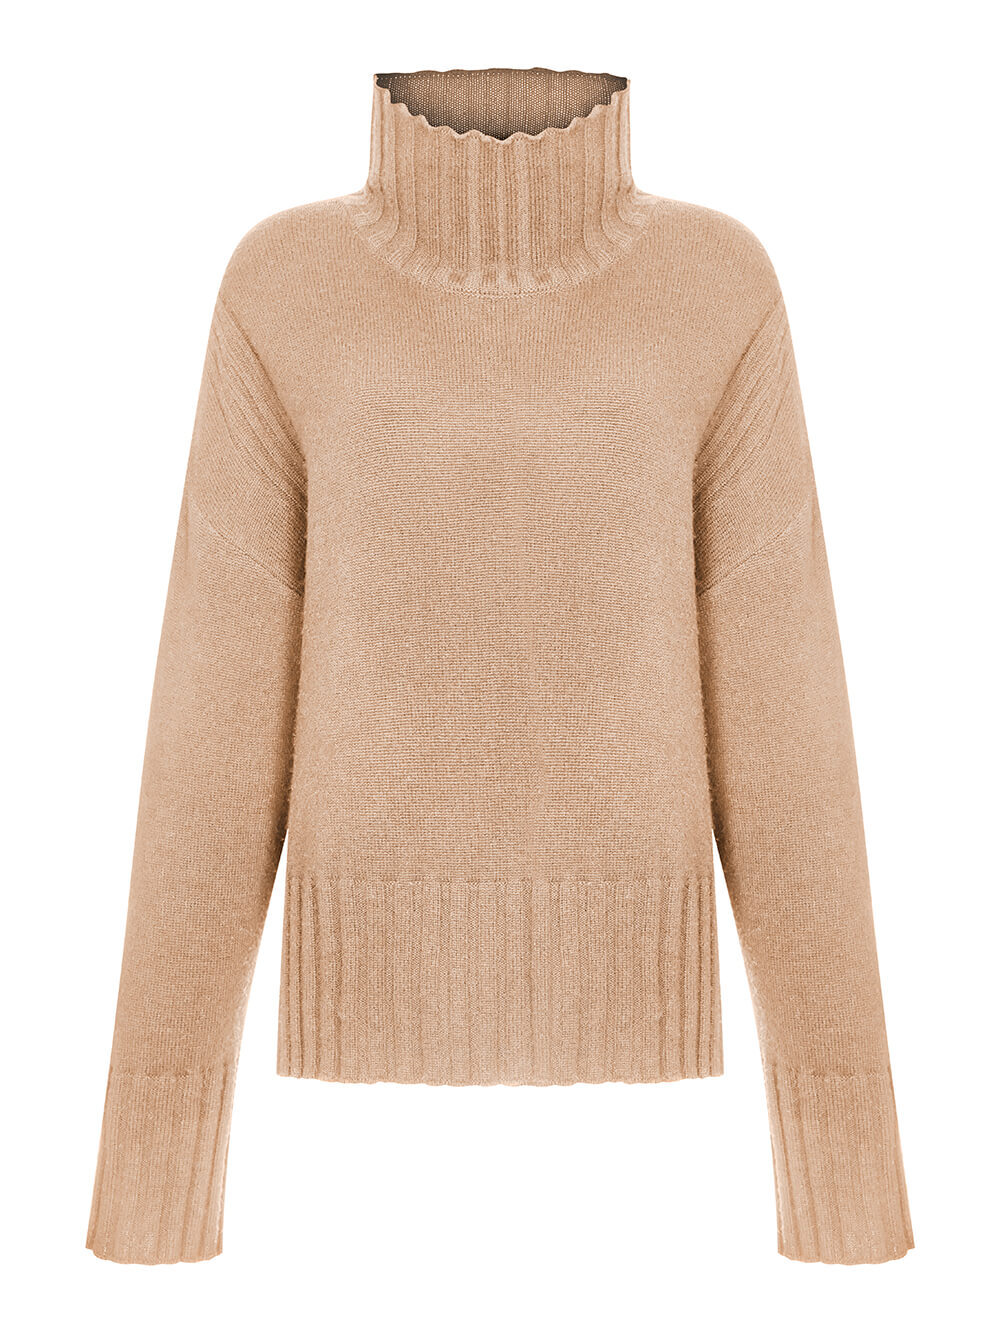 Женский свитер бежевого цвета из шерсти и кашемира